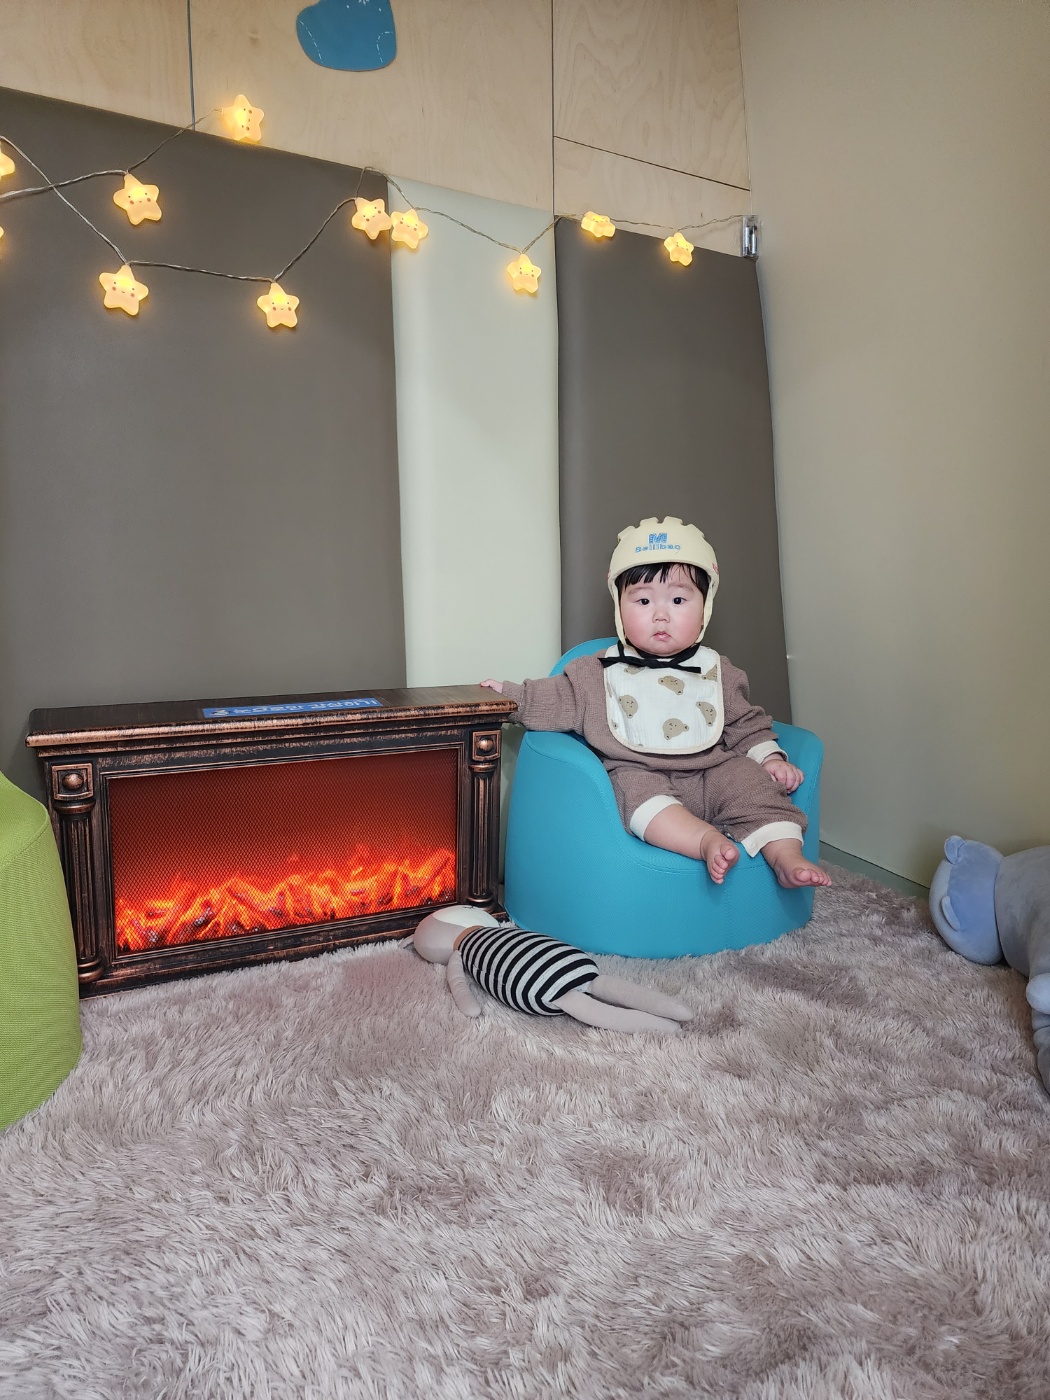 아기 헬멧을 쓰고 의자에 앉아있는 6개월 아기 사진.